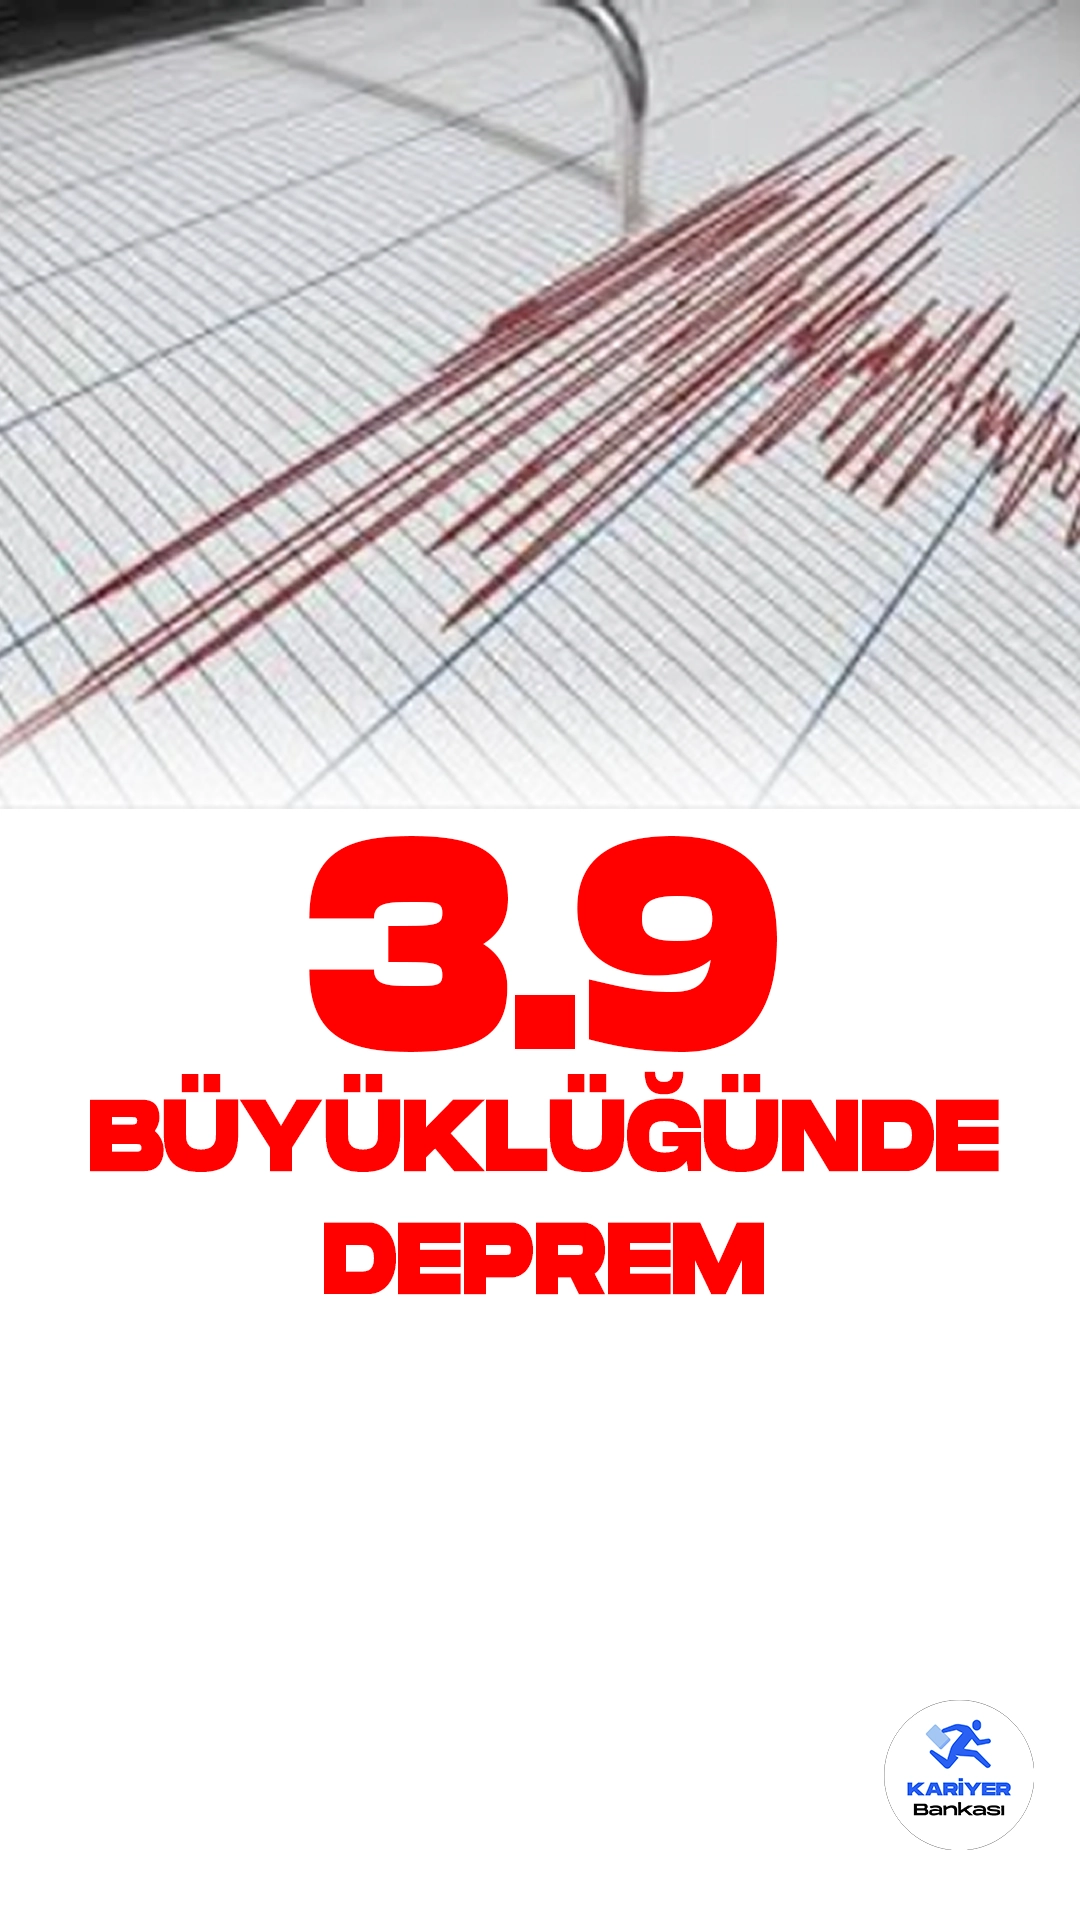 Adana'da 3.9 Büyüklüğünde Deprem Oldu. Boğaziçi Üniversitesi Kandilli Rasathanesi ve Deprem Araştırma Enstitüsü resmi sayfasından yayımlanan son dakika bilgisine göre, Adana'nın Kozan İlçesine bağlı Mahyalar köyünde 3.9 büyüklüğünde deprem meydana geldiği aktarıldı.